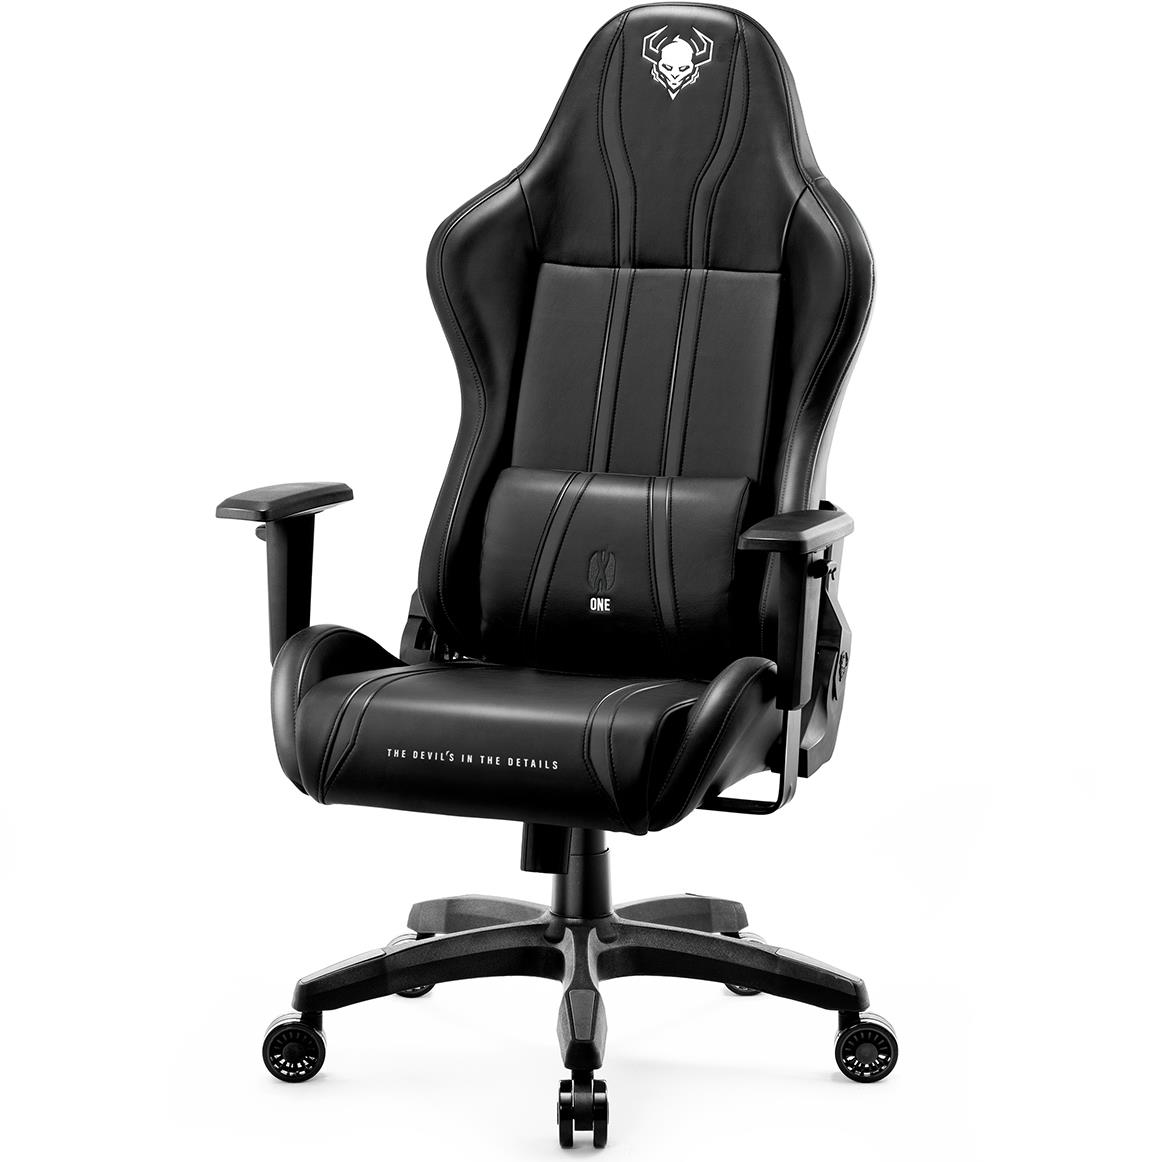 Diablo X-One 2.0 kancelarijska stolica 68x51x124 cm crna